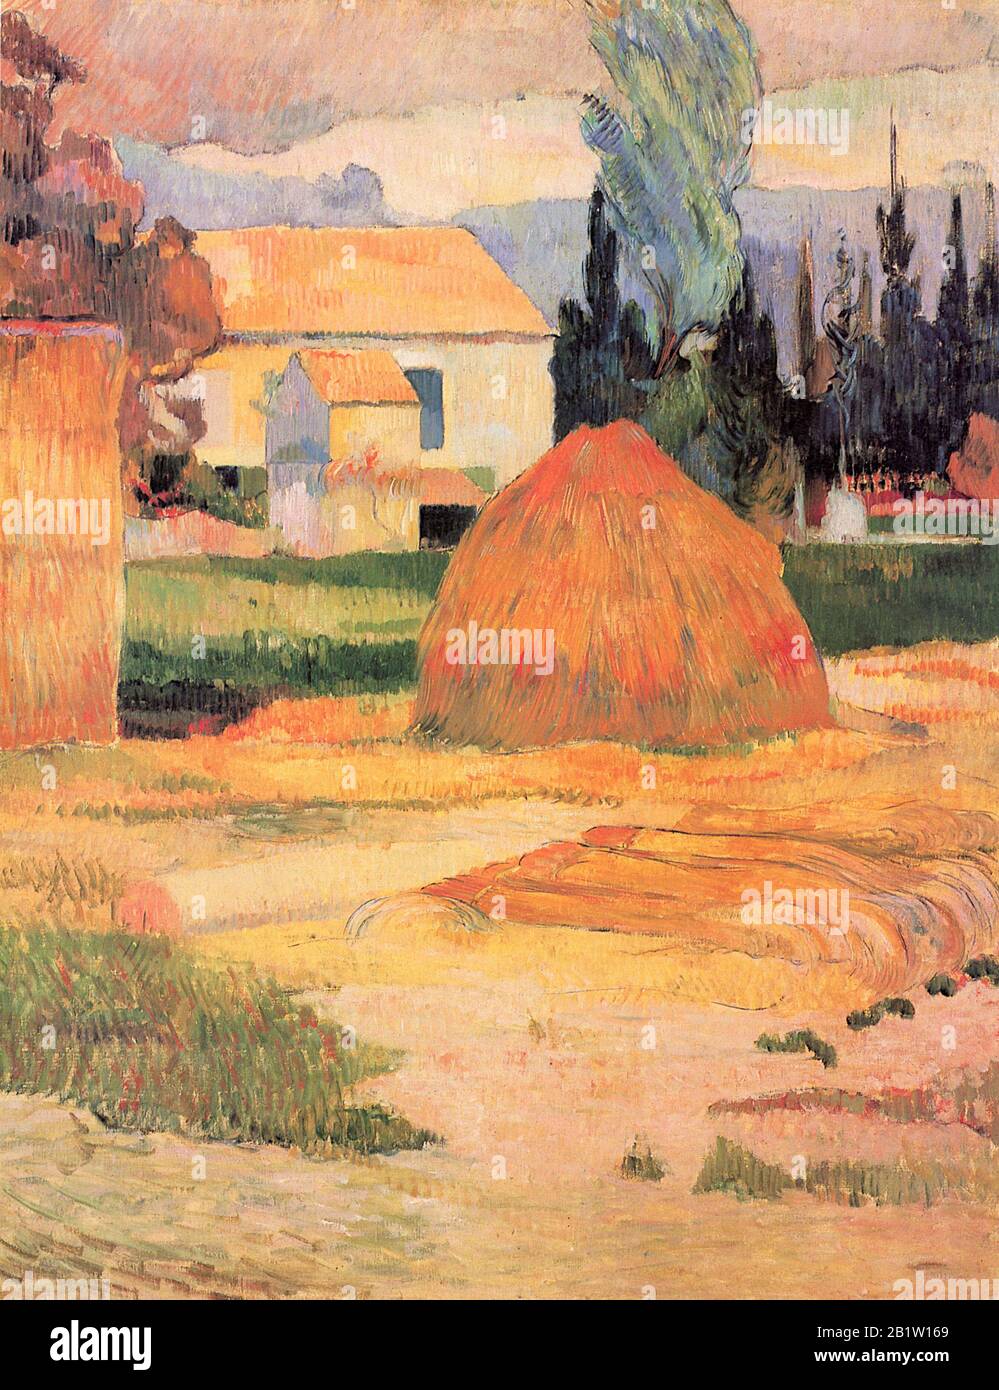 Paysage Près d'Arles (Ferme à Arles) (1888) 19ième siècle Peinture de Paul Gauguin - Très haute résolution et image de qualité Banque D'Images